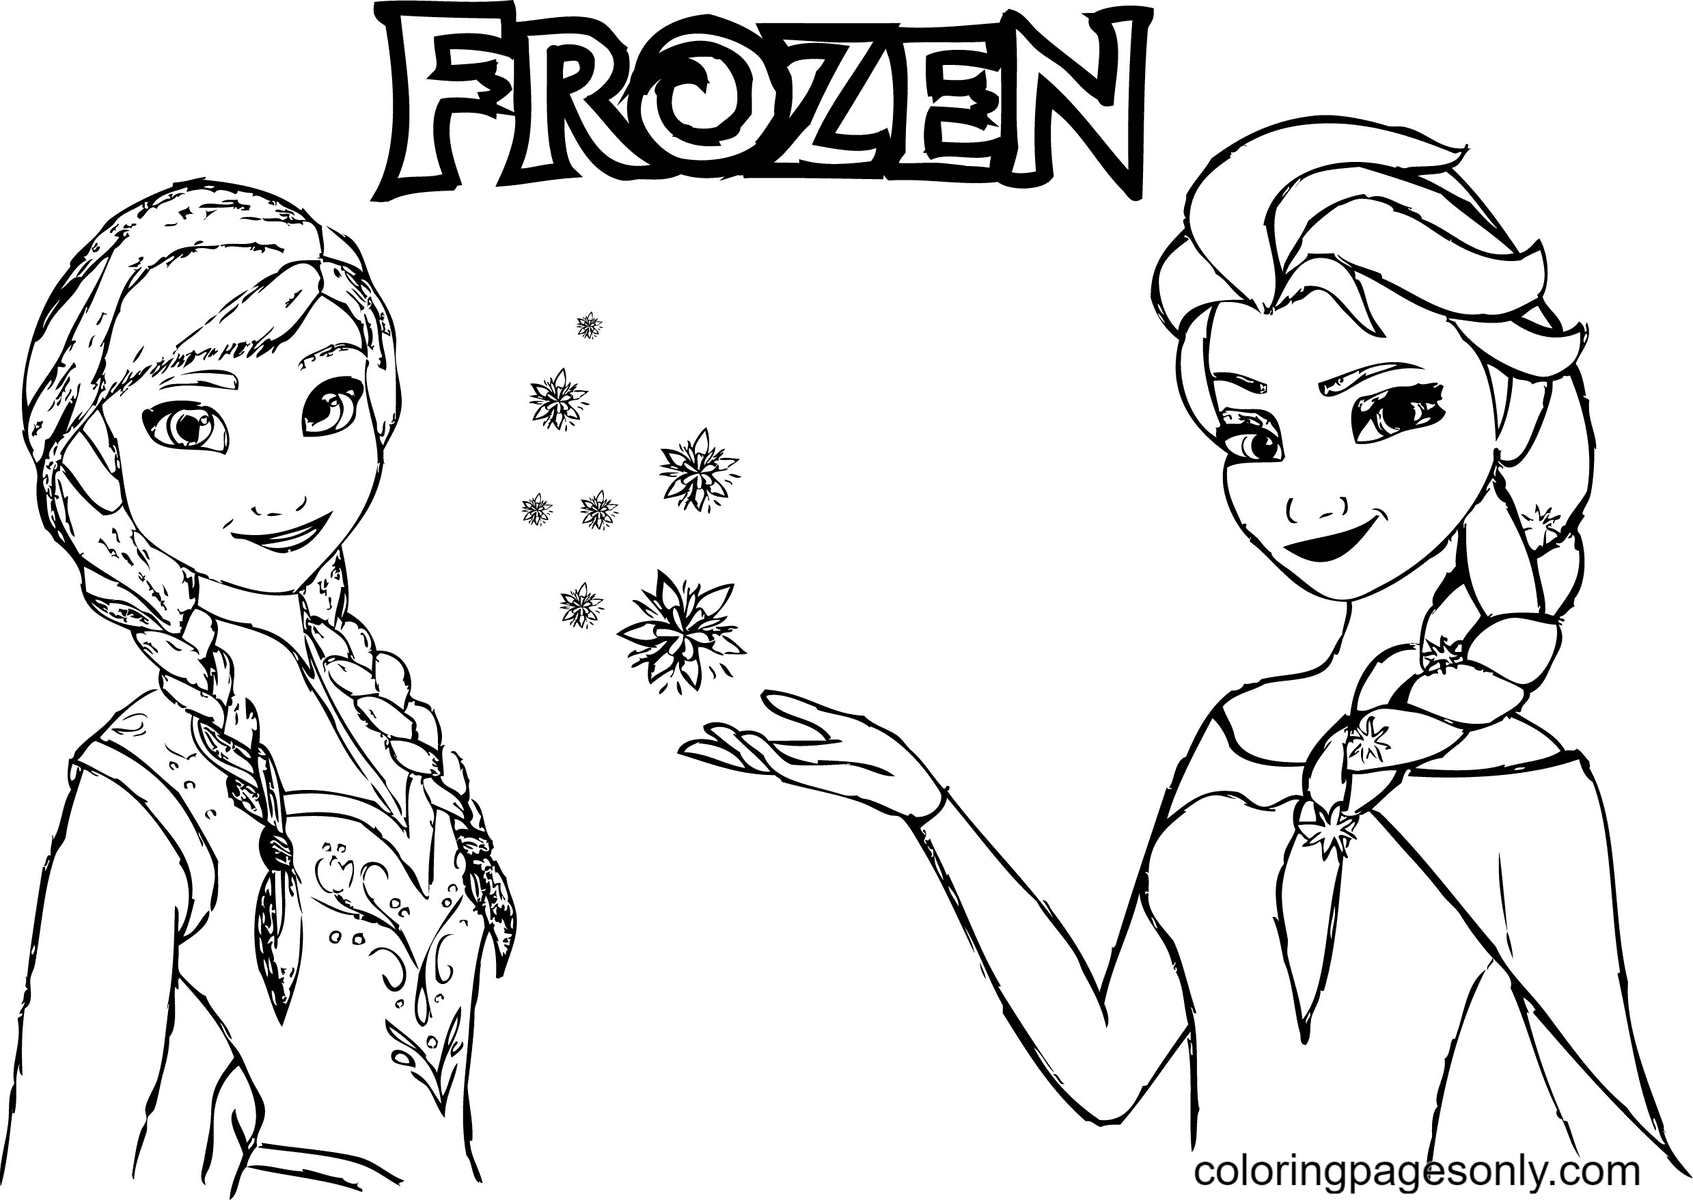 Disney Frozen Anna met Elsa van Elsa en Anna